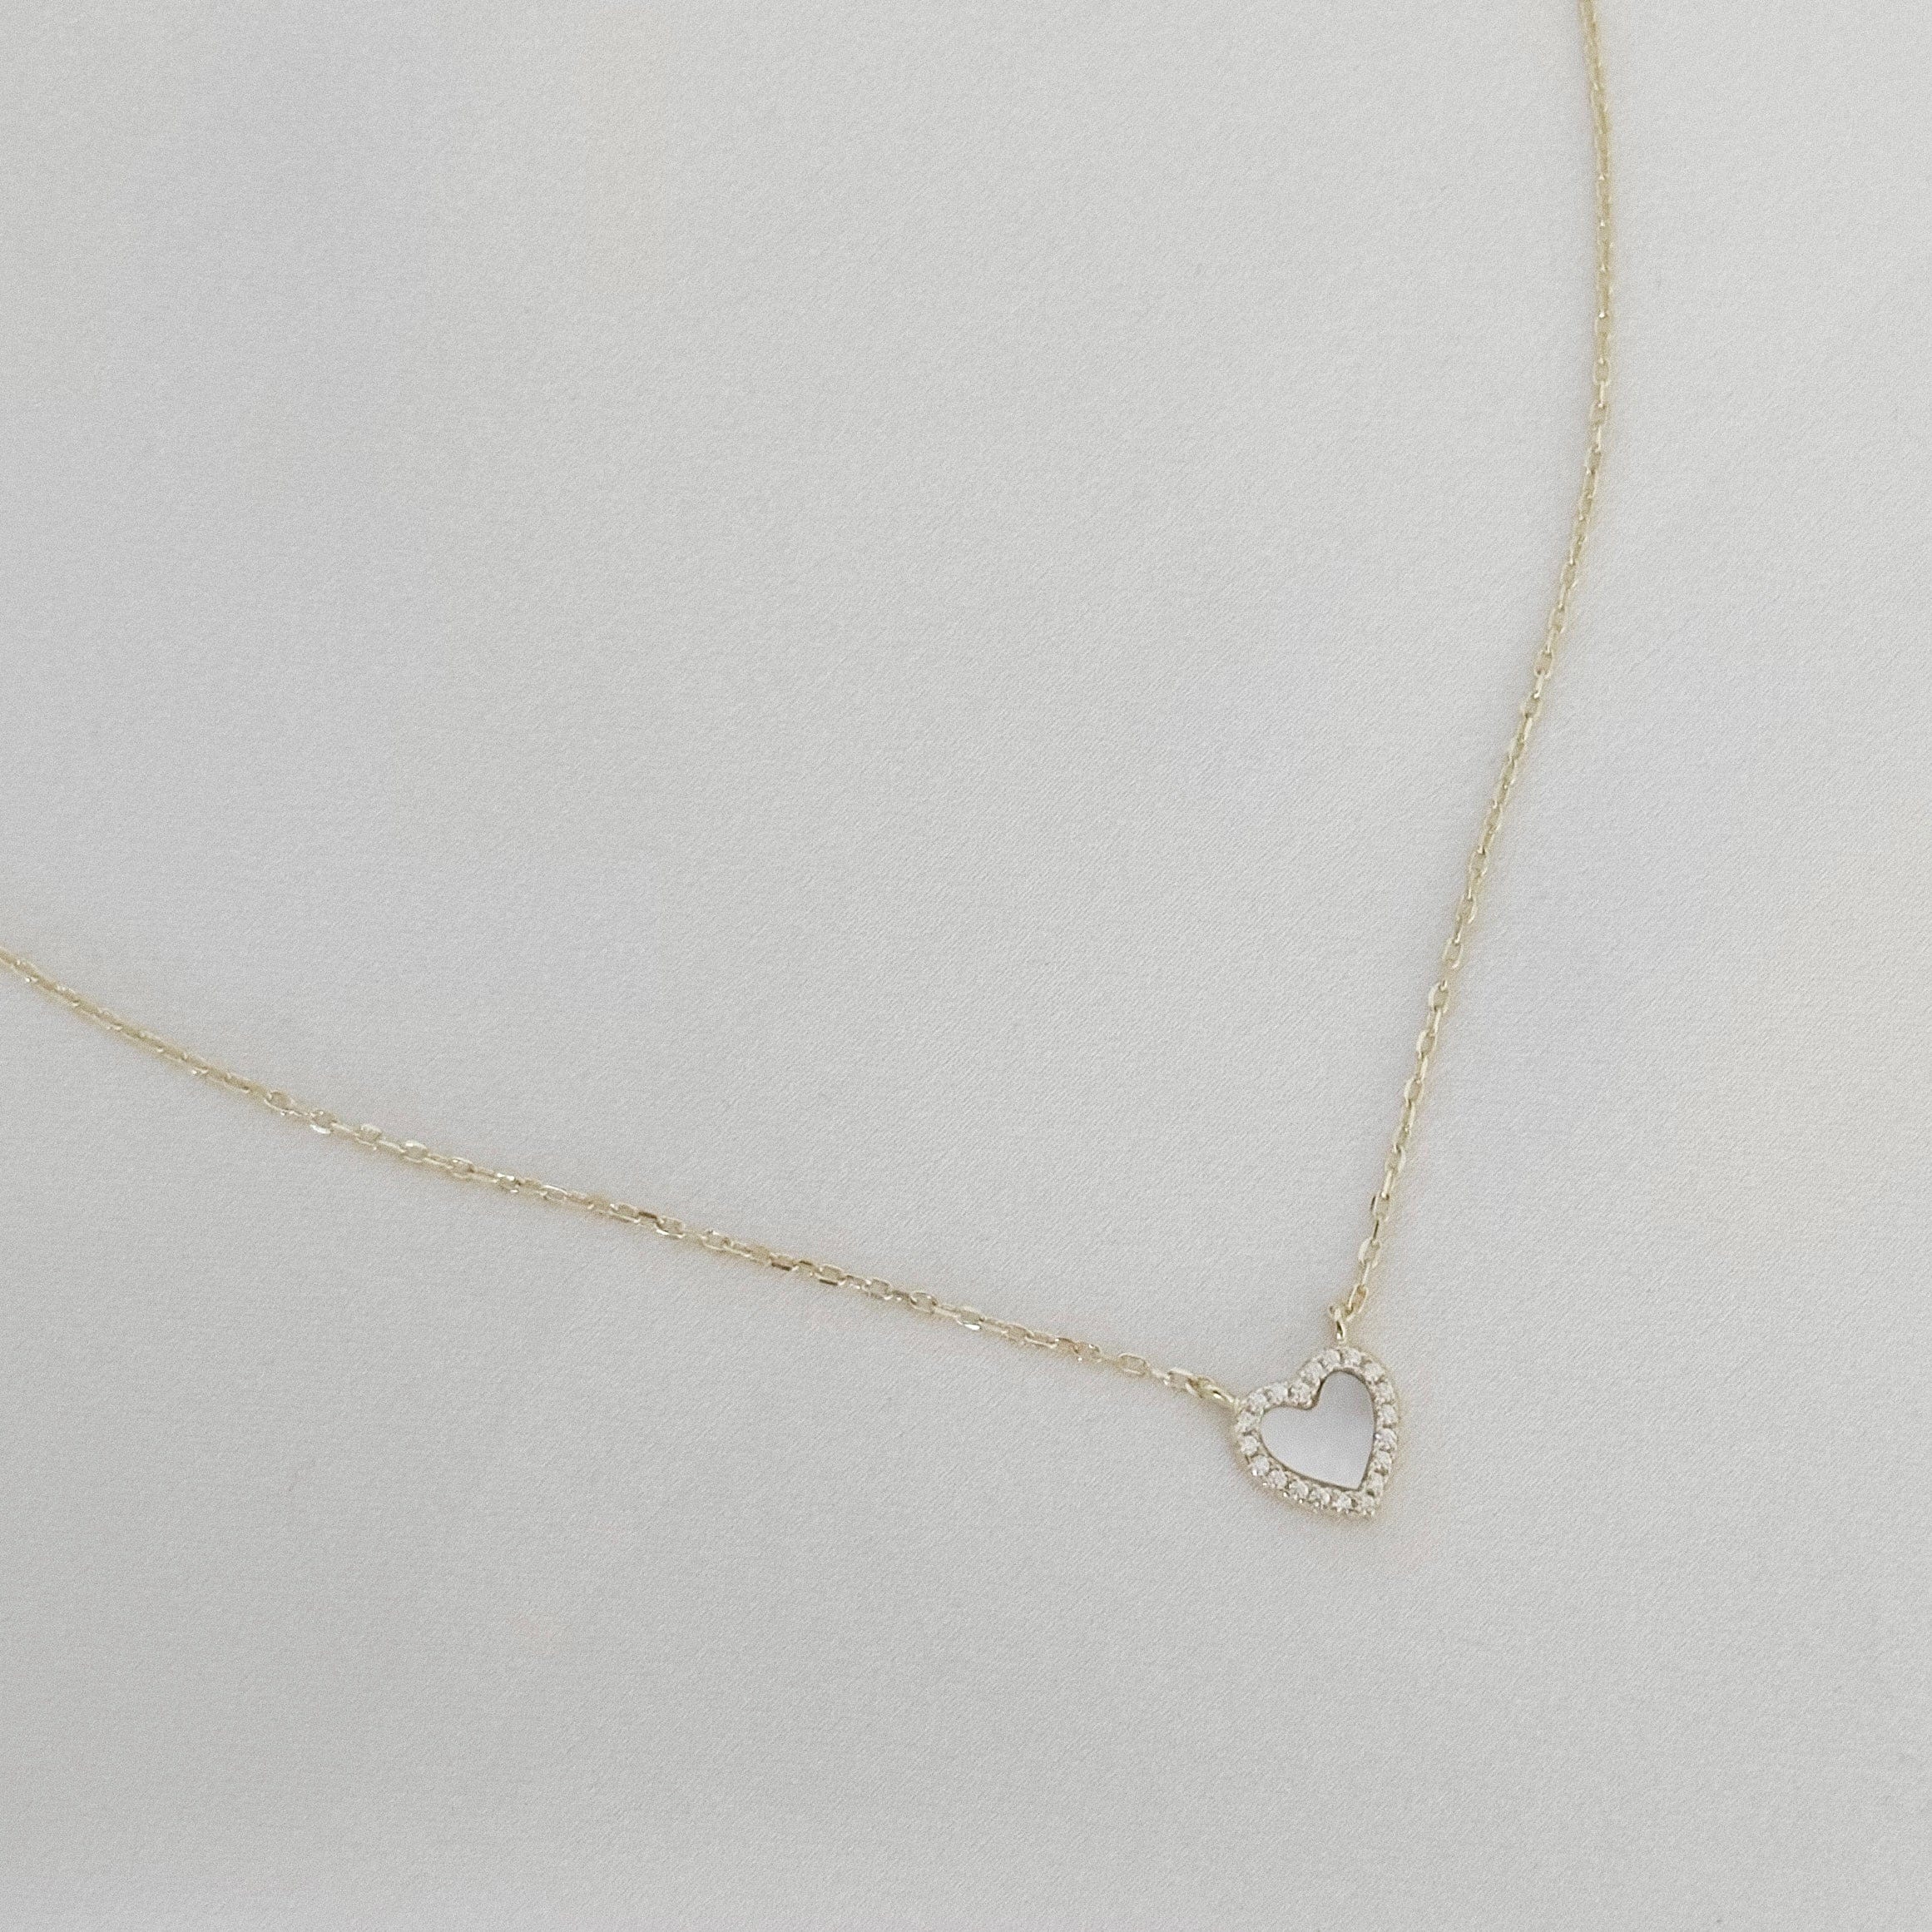 LE sensor necklace Sofie Heart Necklace